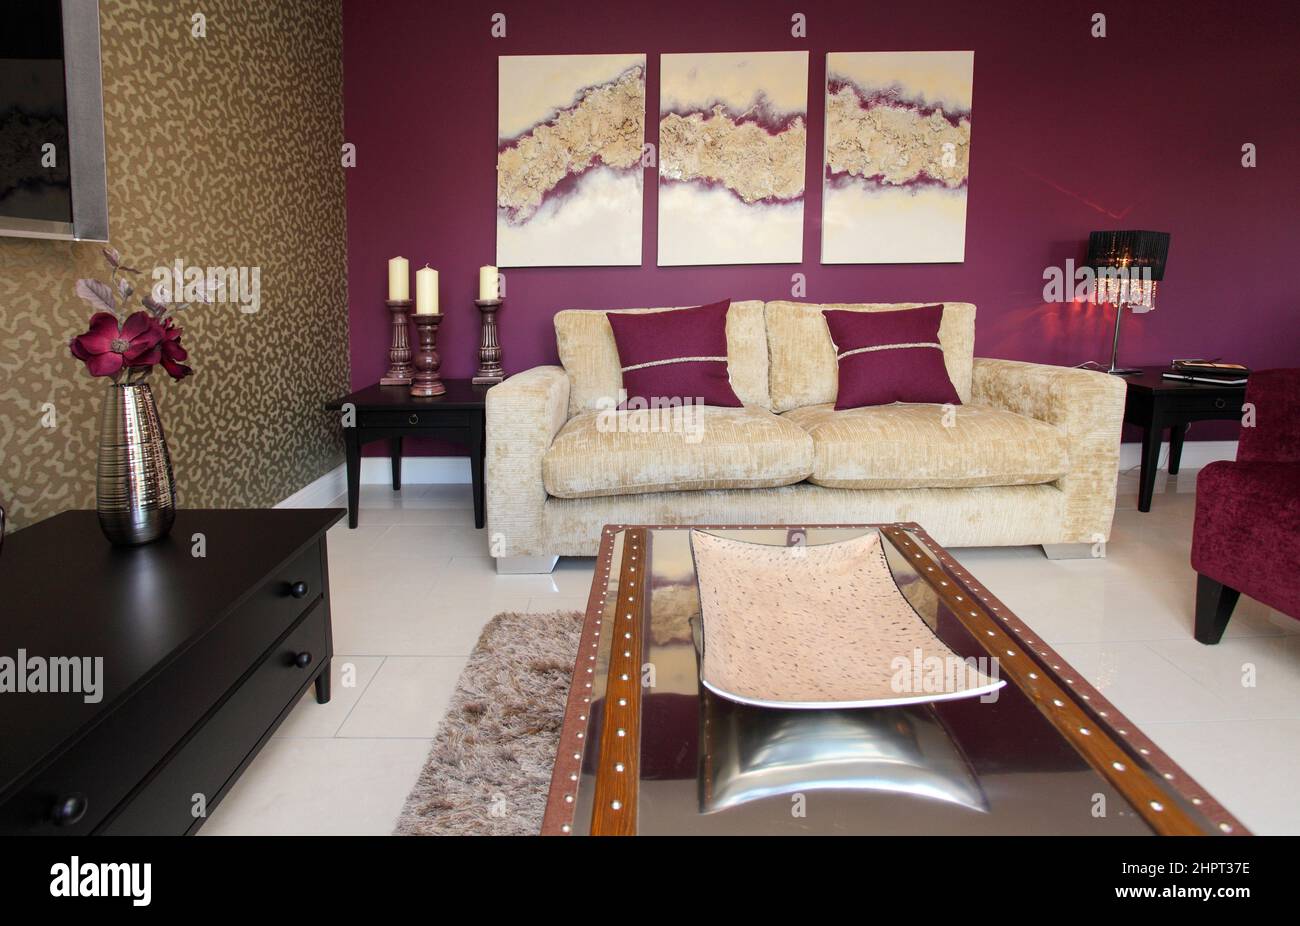 Salon salle de séjour dans maison moderne avec des murs aux couleurs fortes, rose foncé, couleur pourpre, table basse, canapé. Banque D'Images